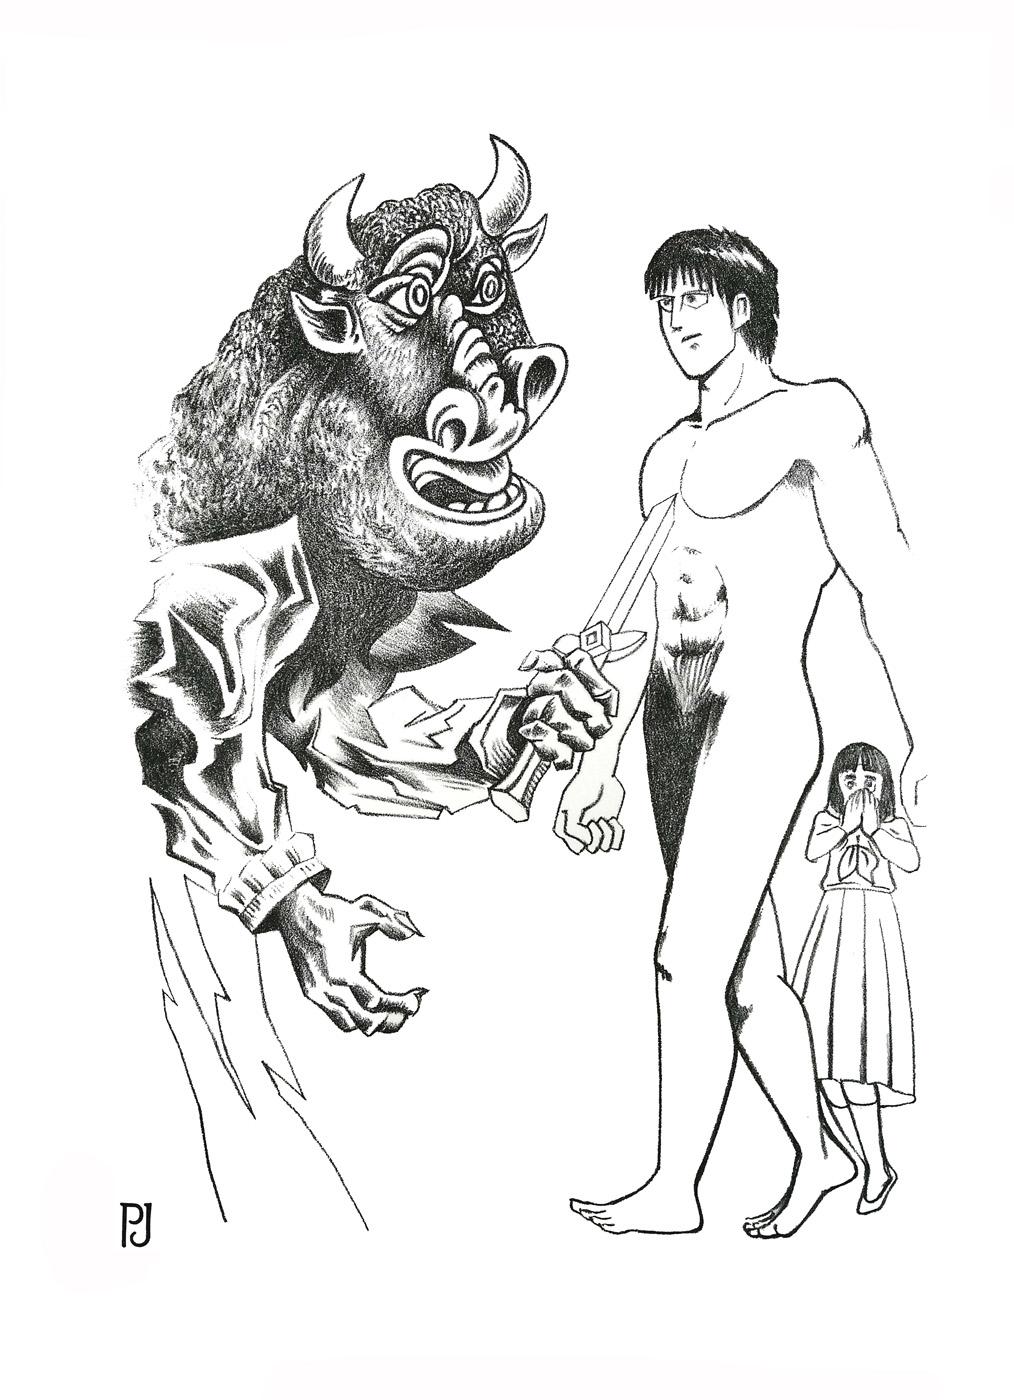 "Minotaure-Manga-D ".

Impression lithographique / Encre noire imprimée sur papier JOHANOT 240gr.

Dimensions : 56 x 38 cm

signé et numéroté à 6 exemplaires par l'artiste

Les impressions ont été réalisées en collaboration avec Xecon UDDIN, dans le